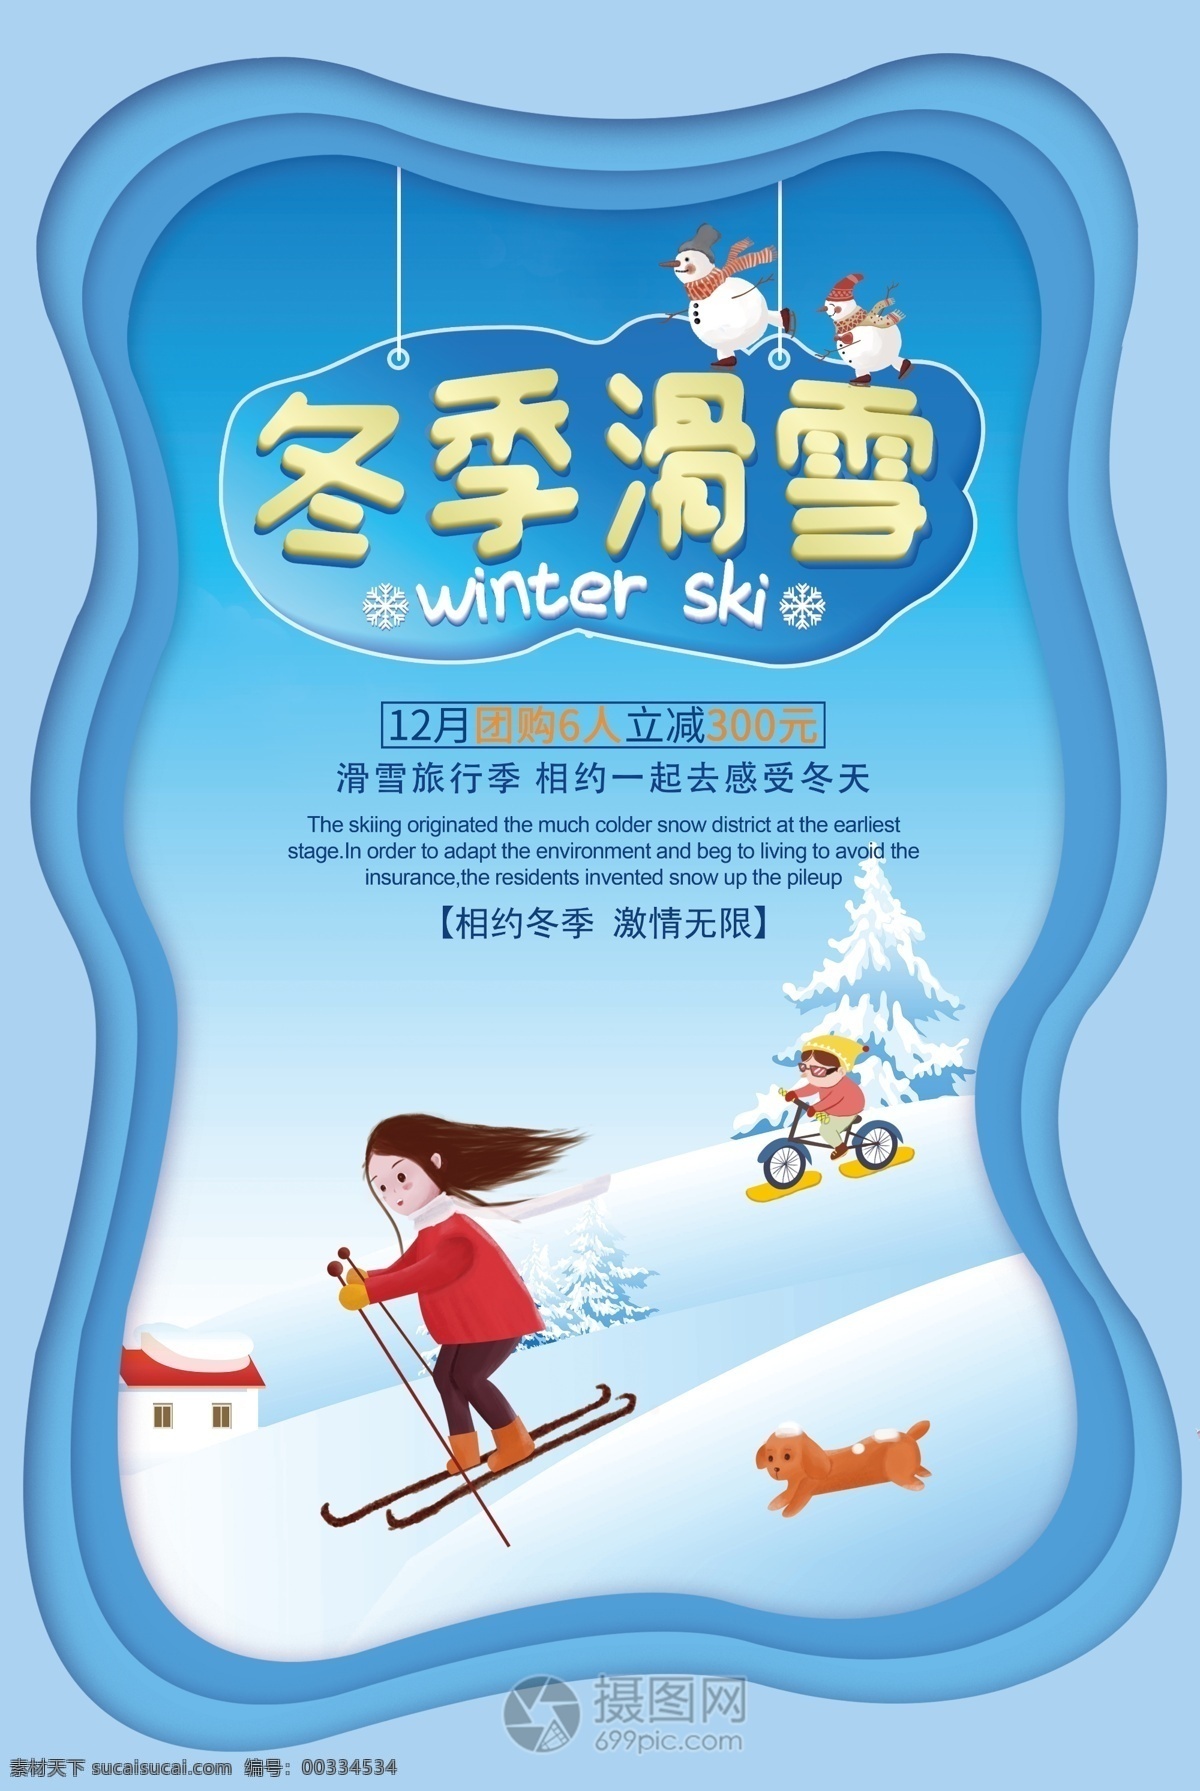 蓝色 插 画风 冬季 滑雪 海报 冬季滑雪 滑雪活动 滑冰 滑雪人物 滑雪运动 雪 滑雪海报设计